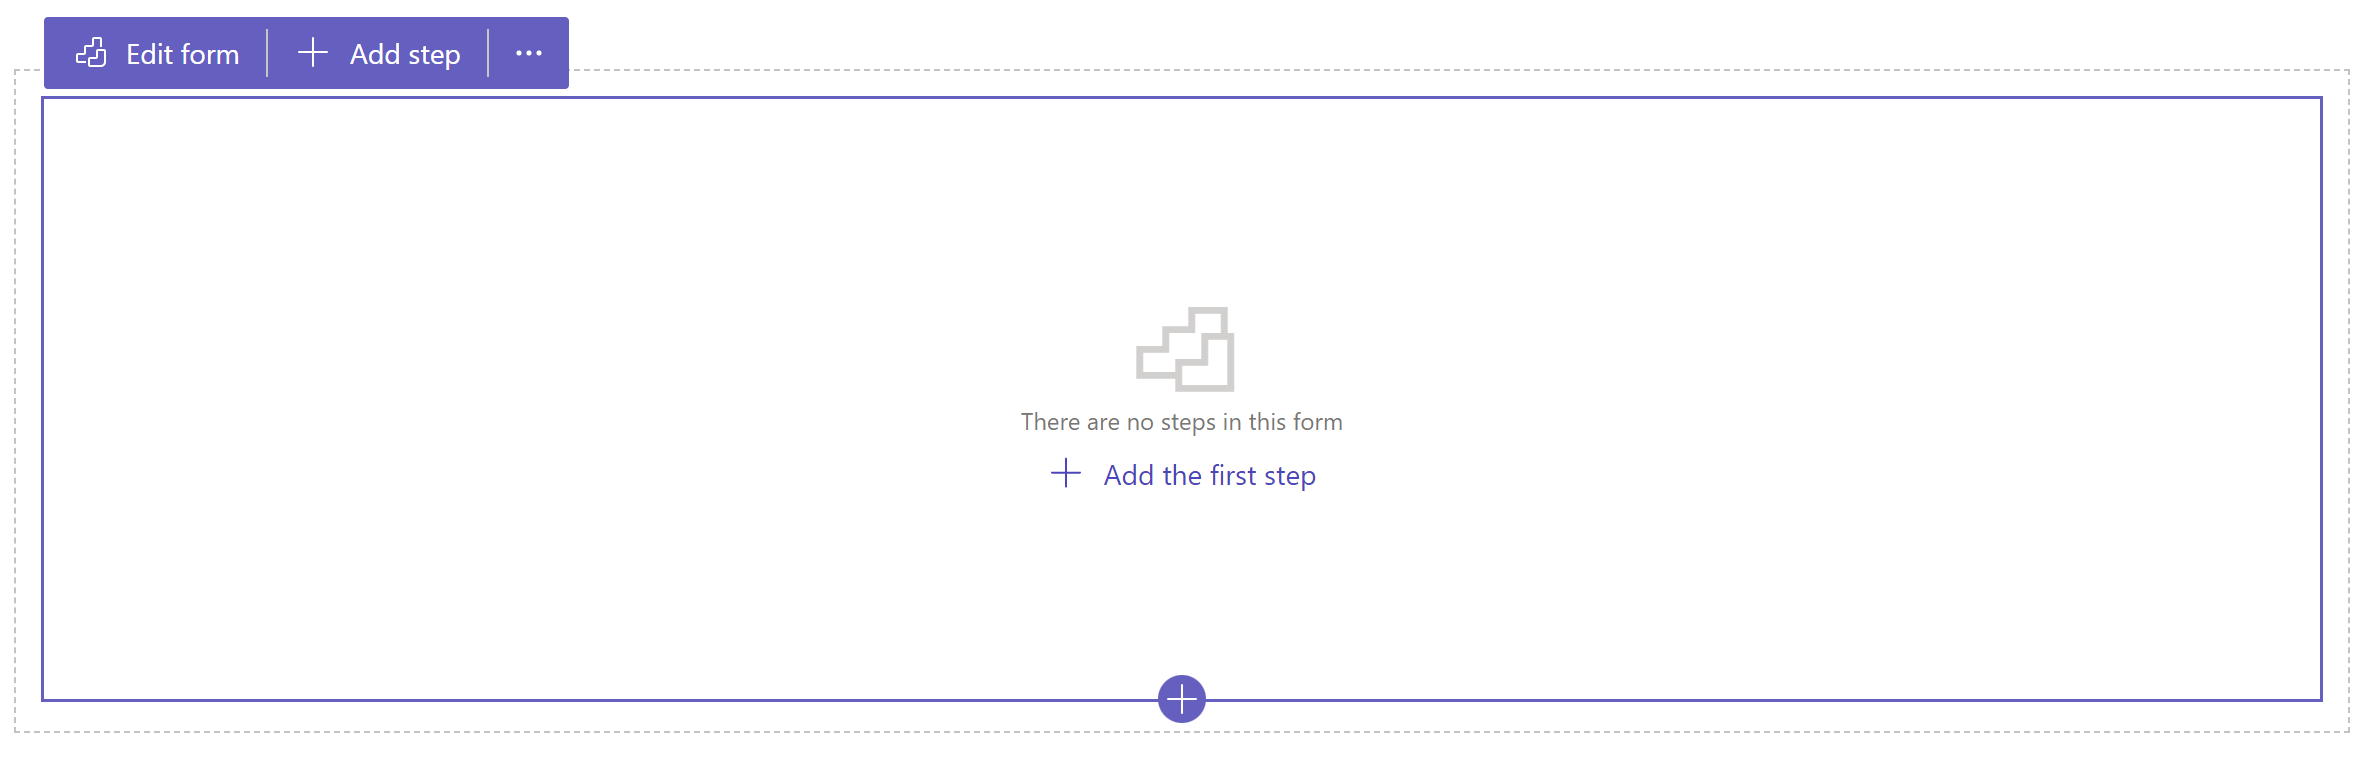 Скріншот додавання першої крок до форми.